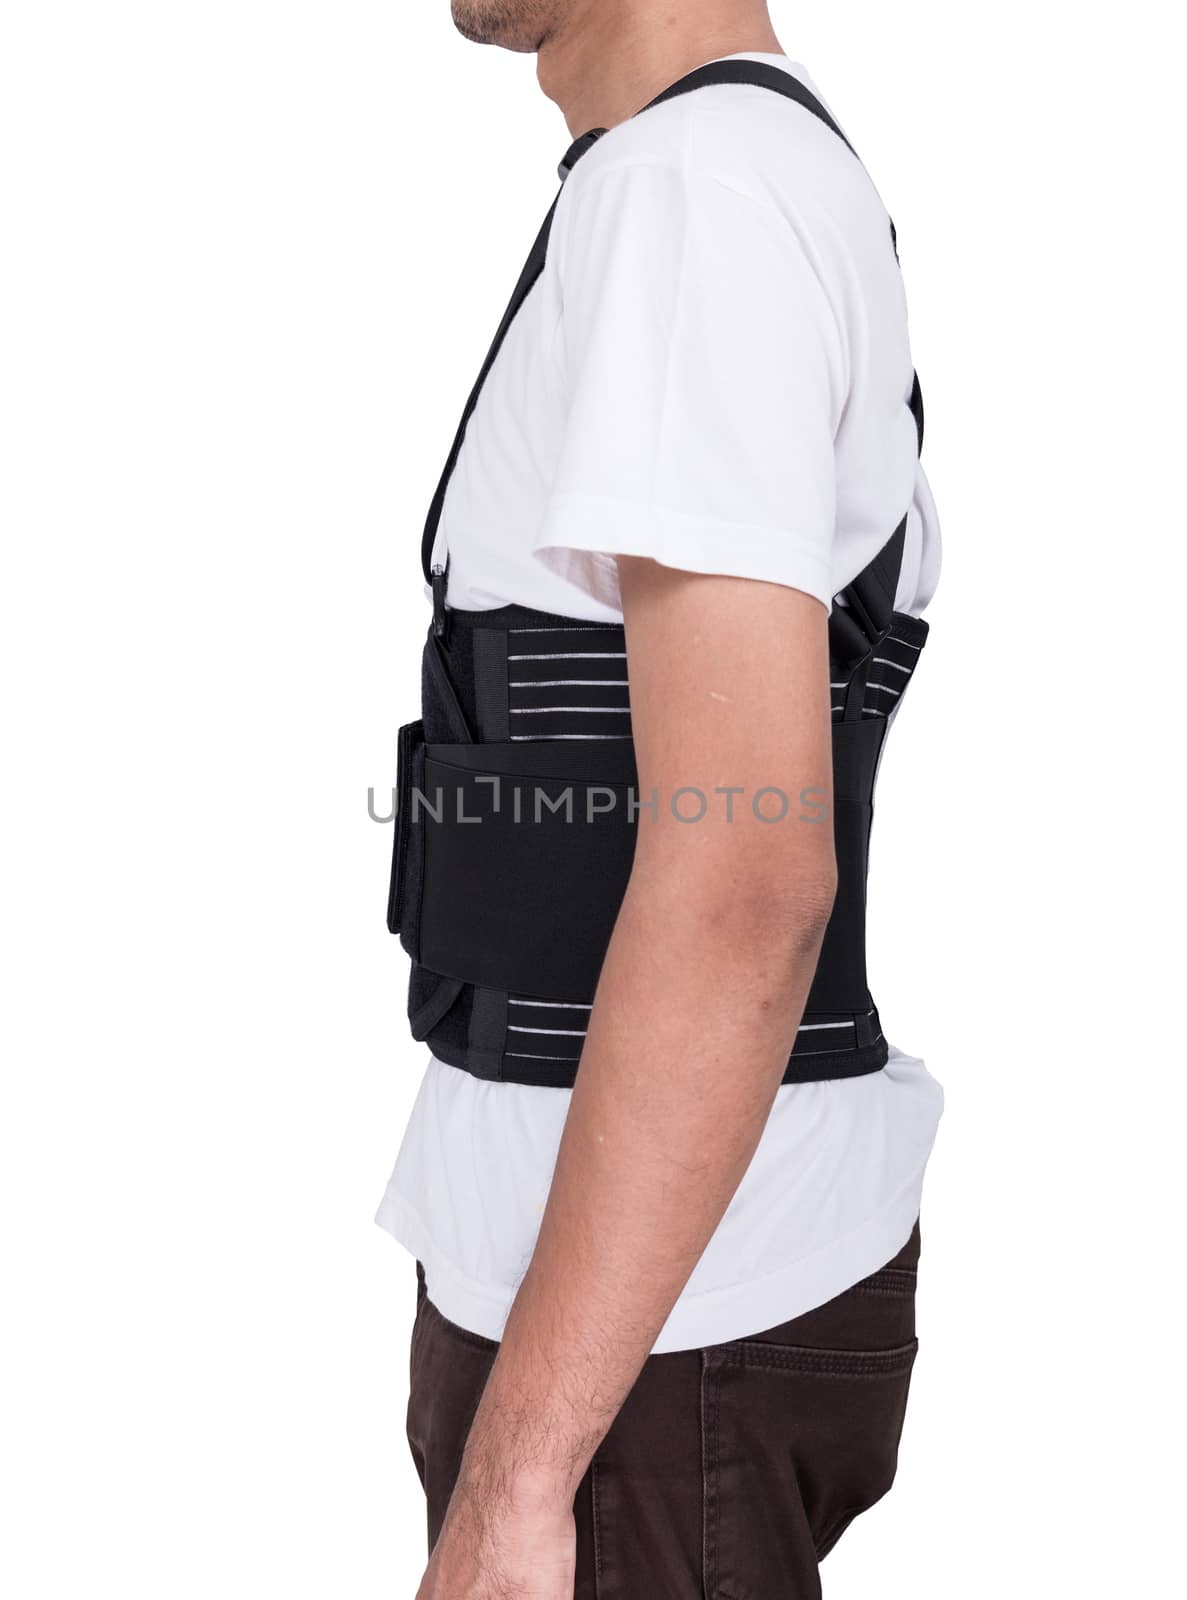 Worker man wear back support belts by Sorapop